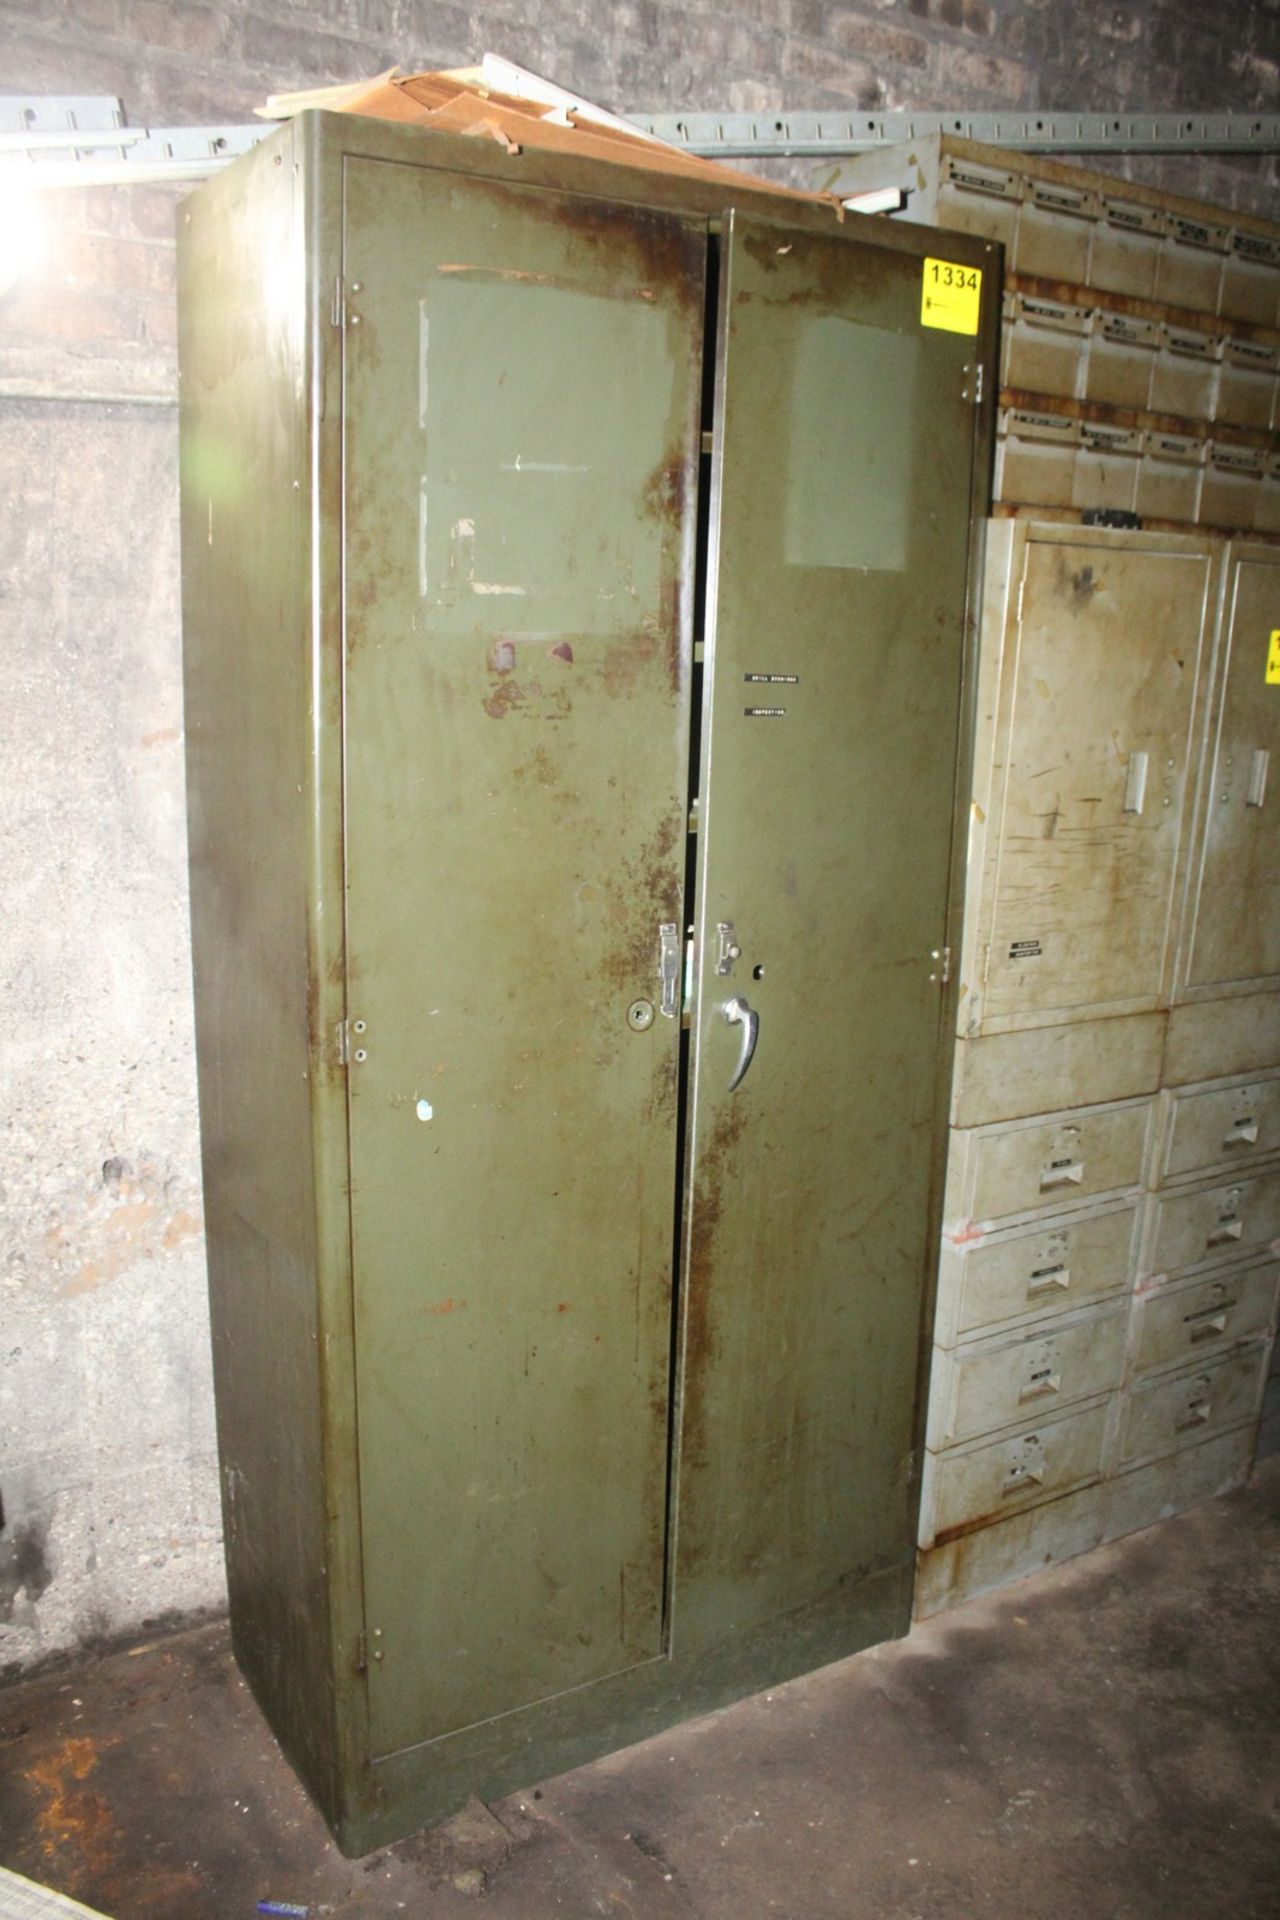 TWO DOOR STEEL CABINET WITH CONTENTS